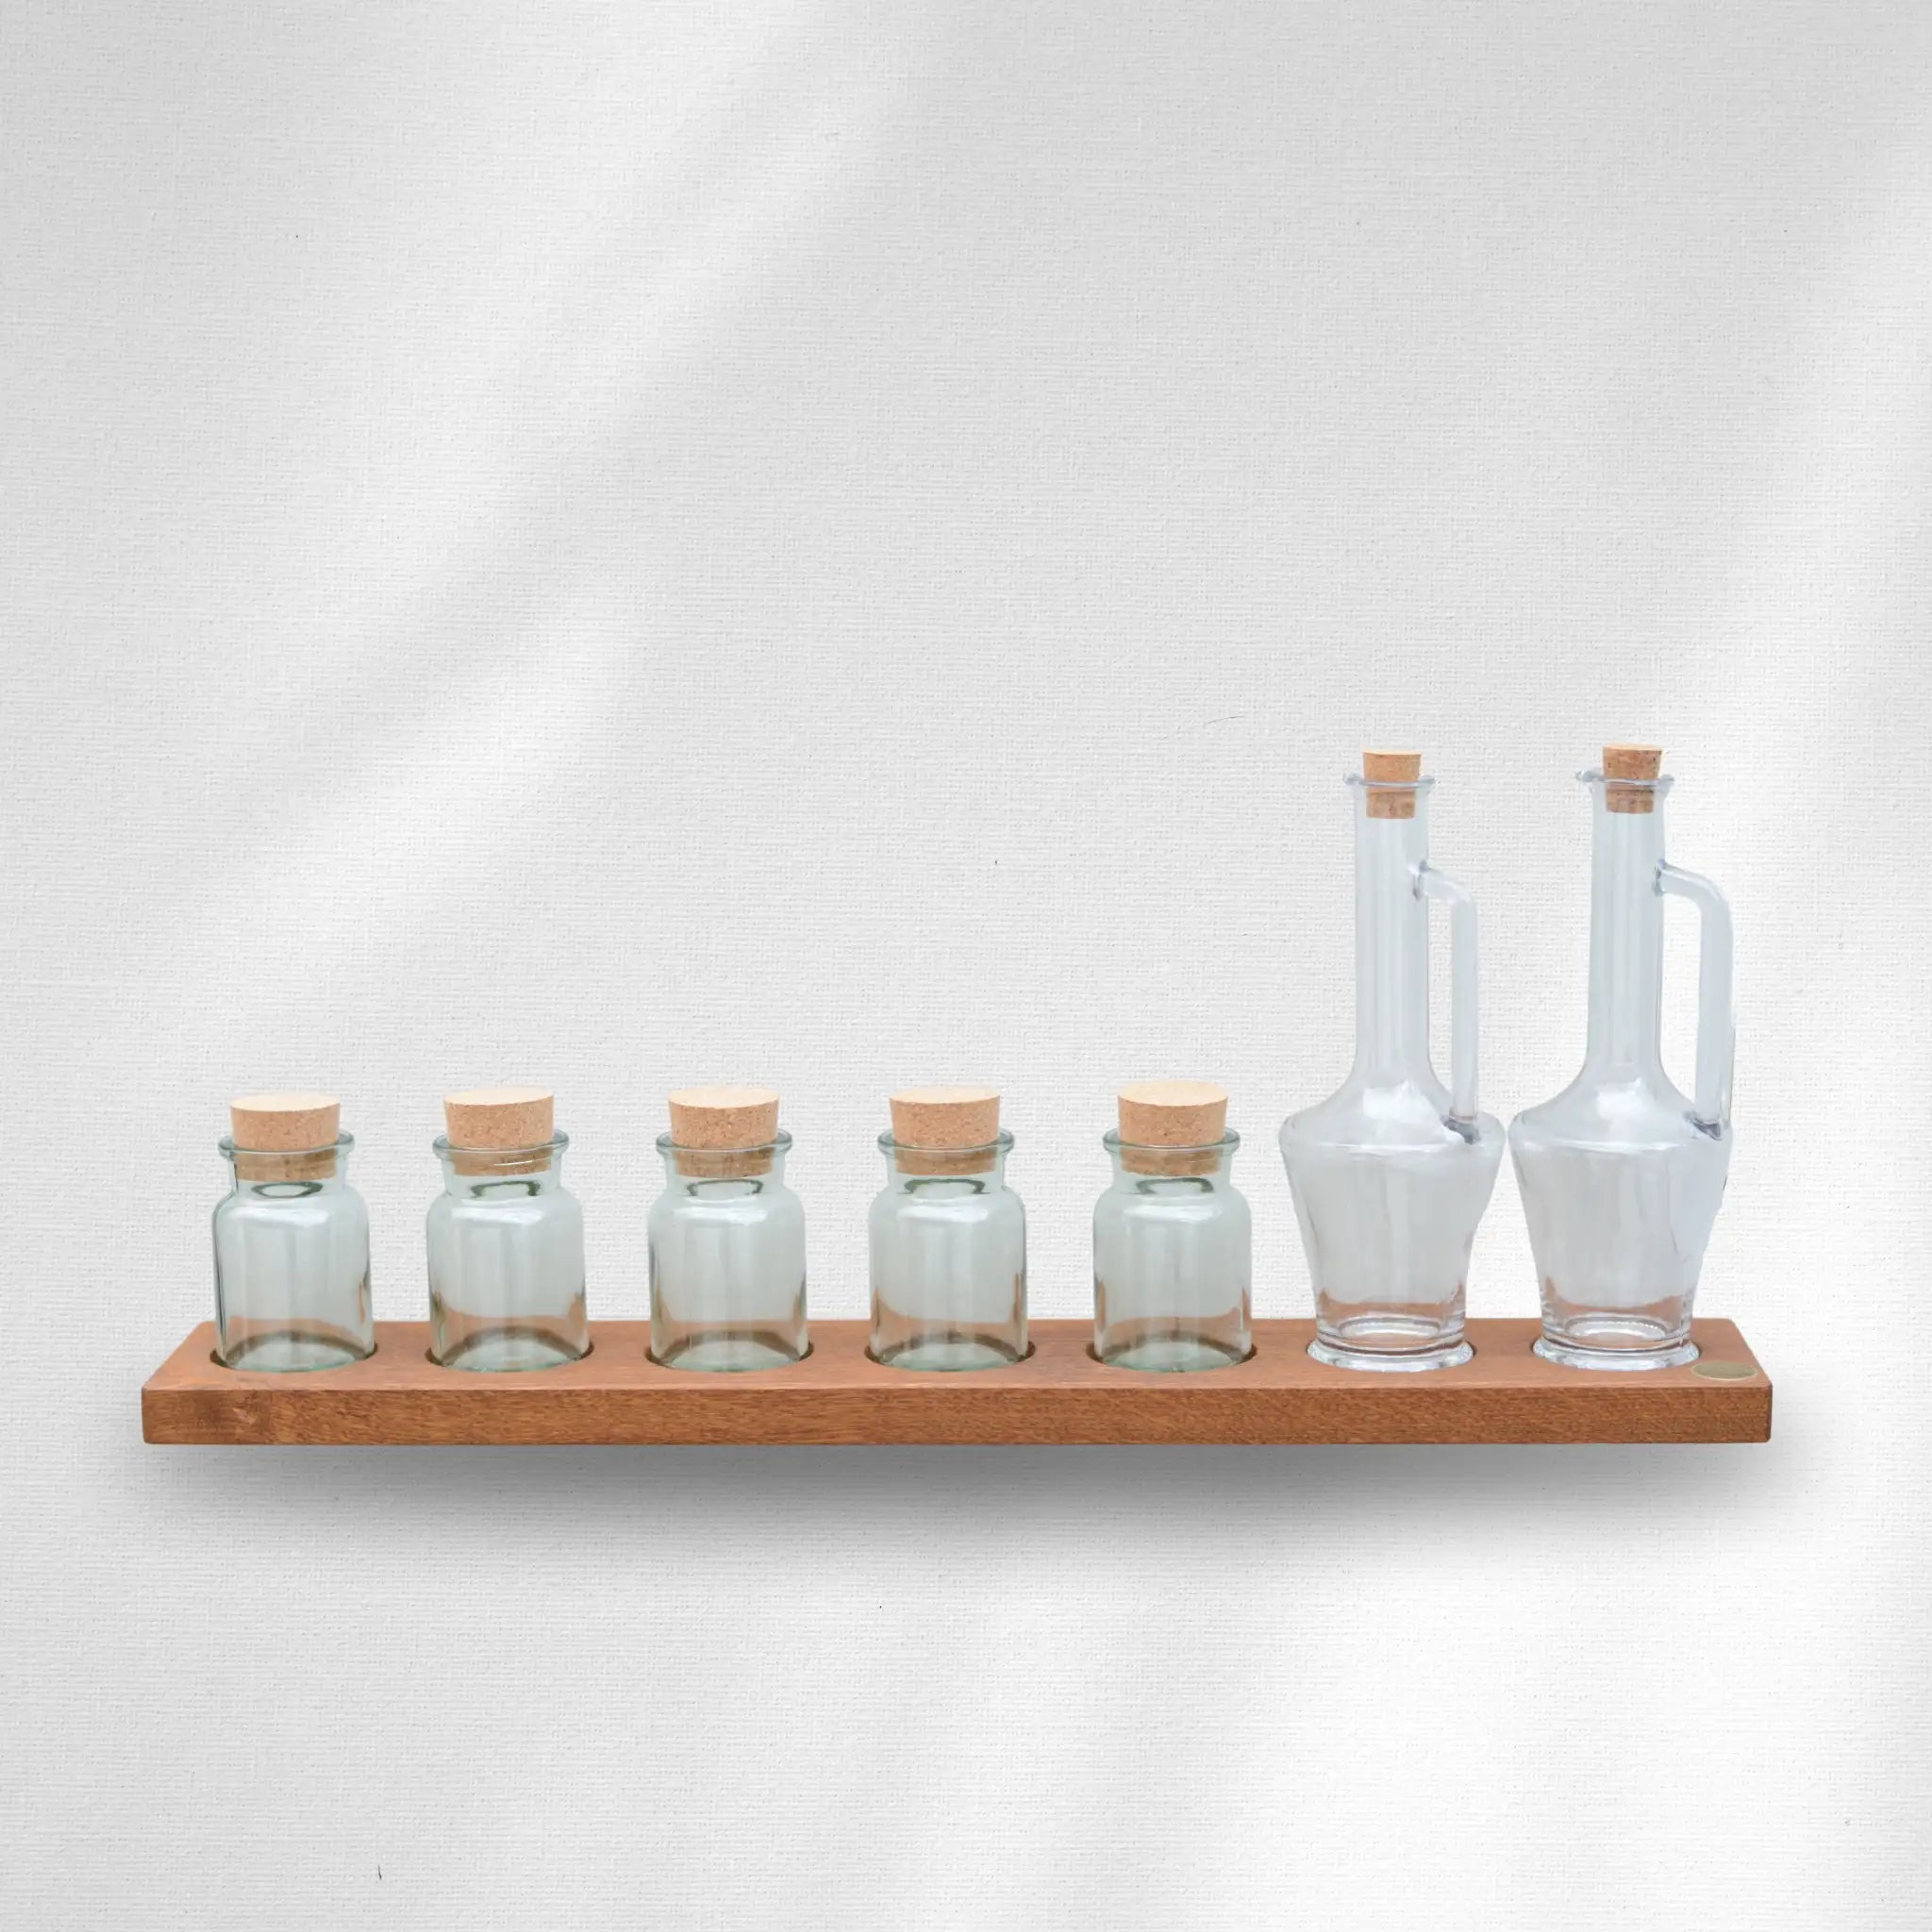 Gewürzregal stehend, Tischdeko für Essig, Öle und Gewürze - Ava vor weißem Hintergrund